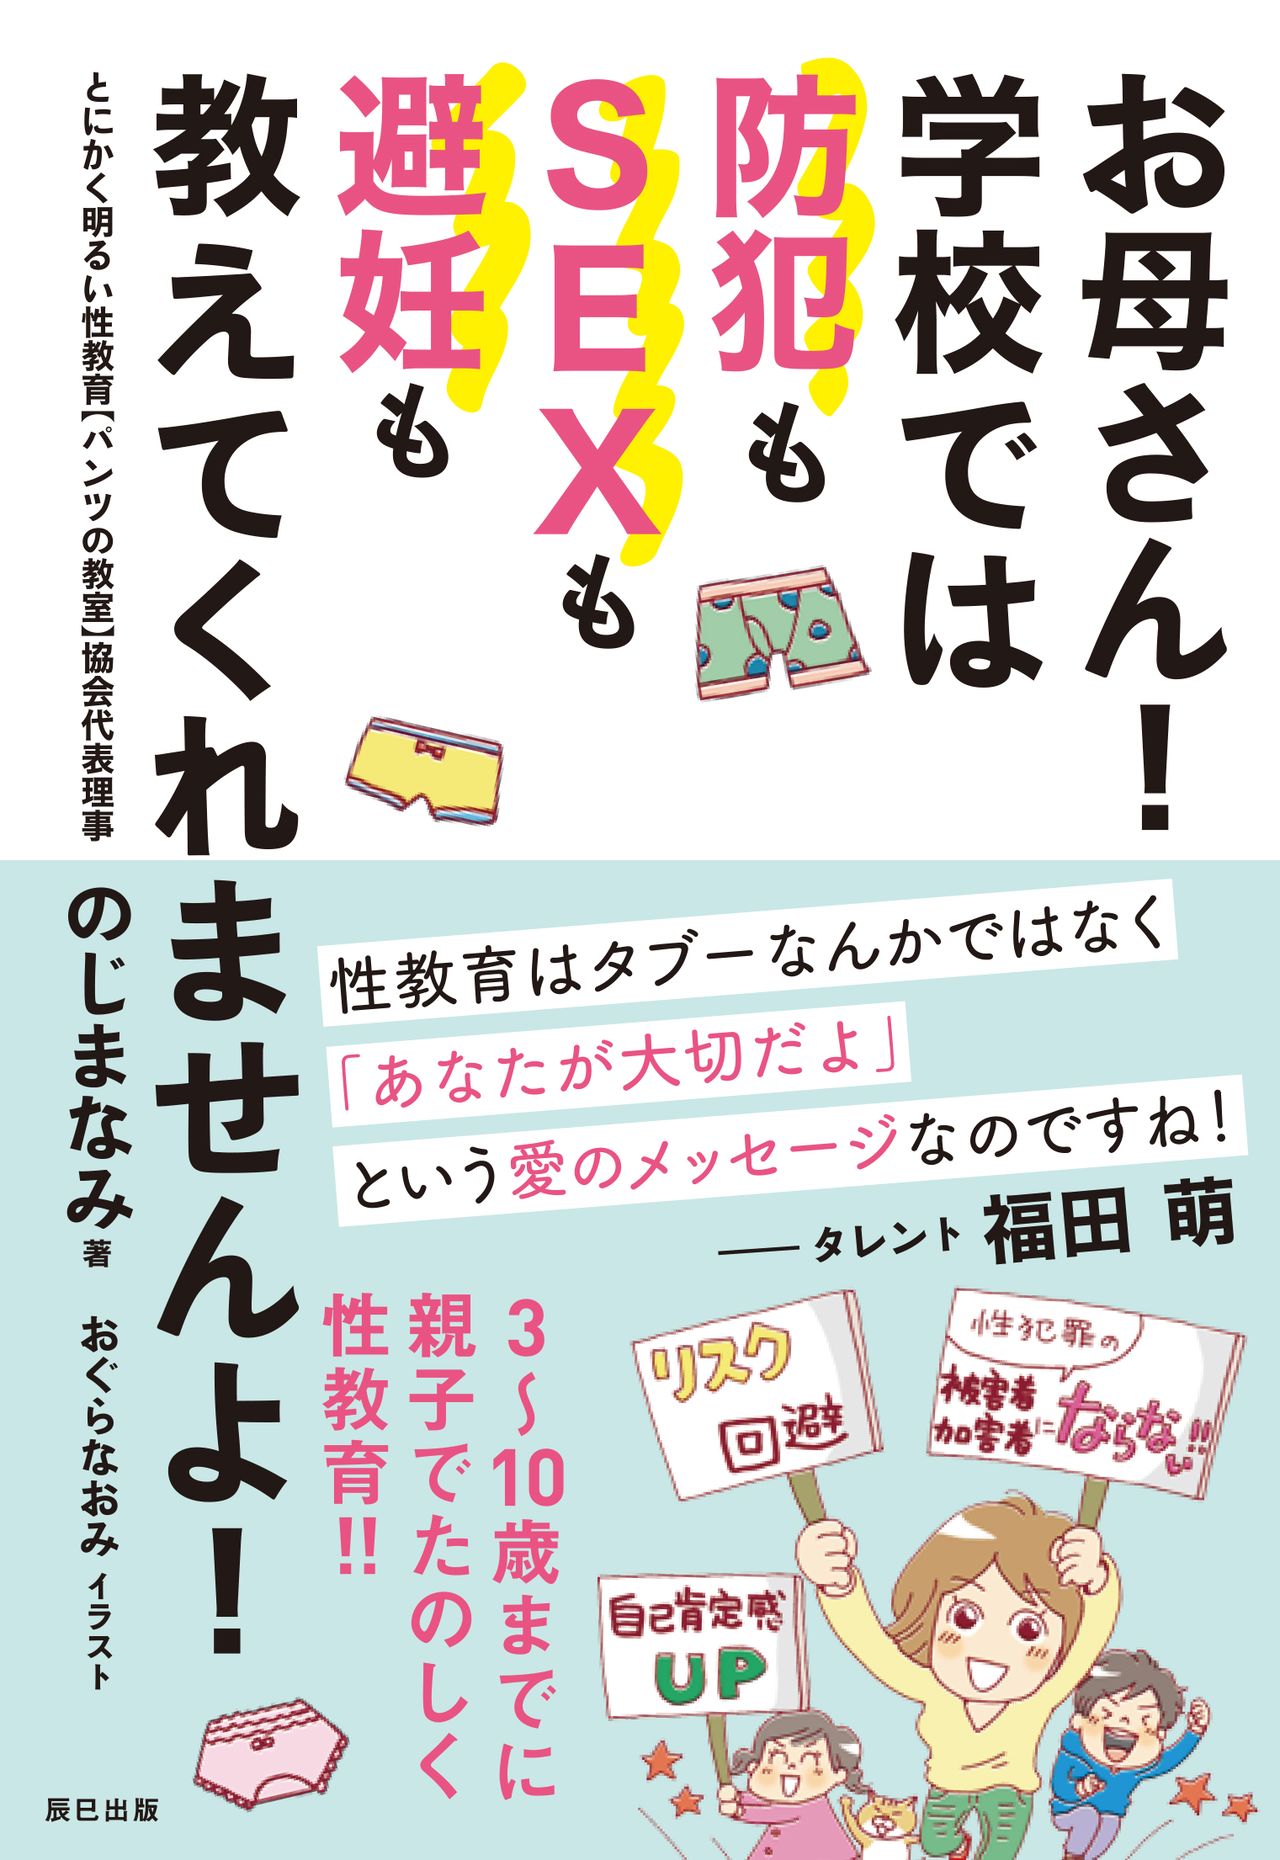 シリーズ ニッポンの性教育 1 子どもたちを性犯罪の被害者にも加害者にもしないために Nippon Com